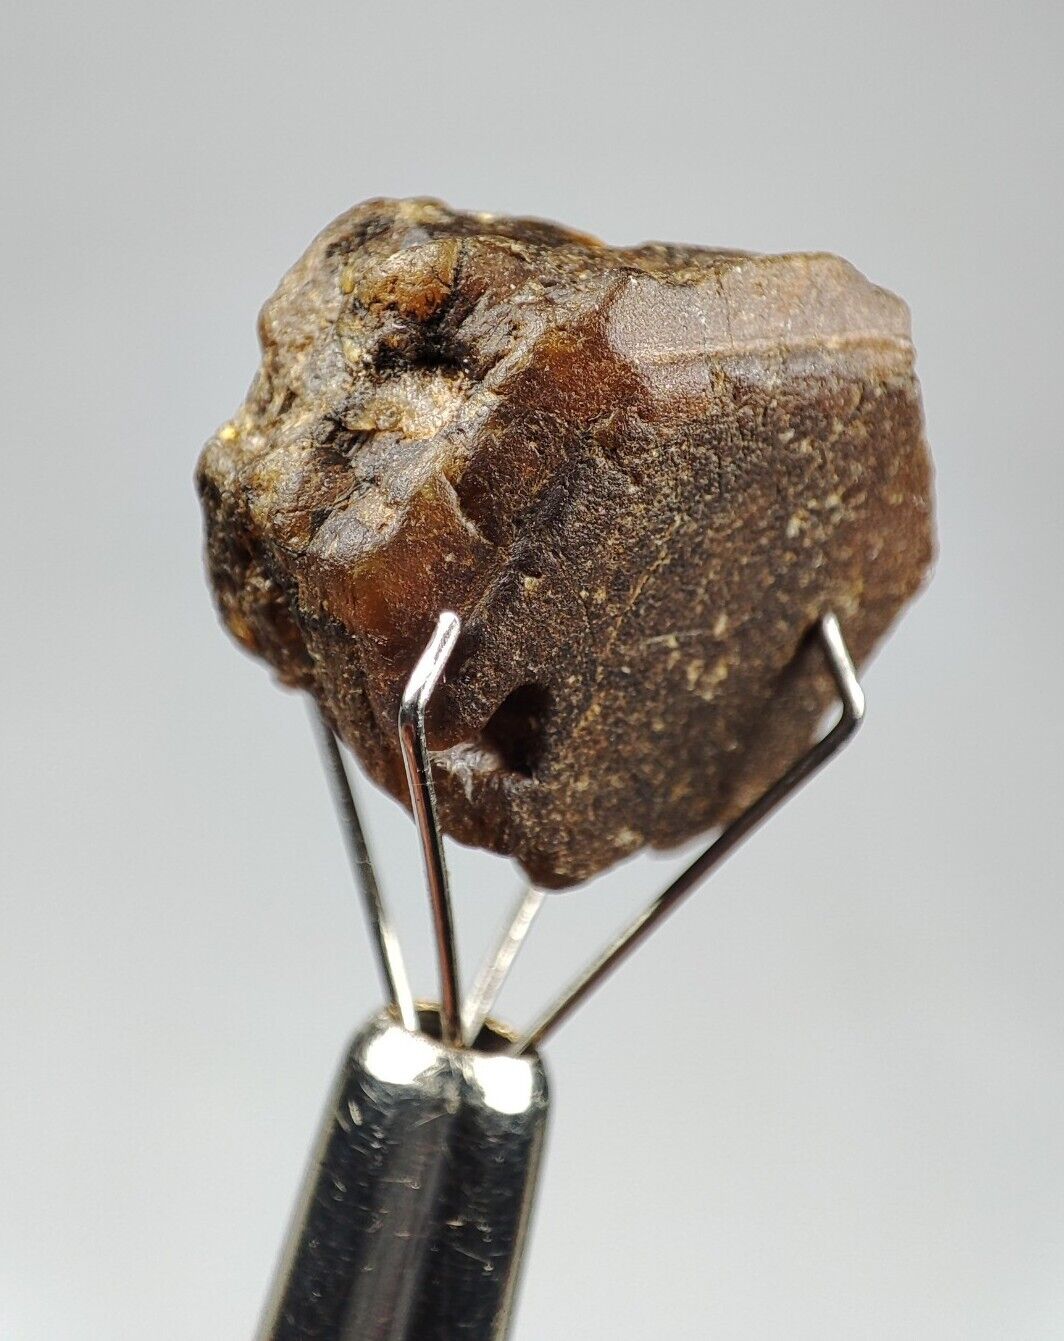 Parisite-(Ce) Rare Earth Crystals of Cerium Lanthanum & calcium fluoro-carbonate